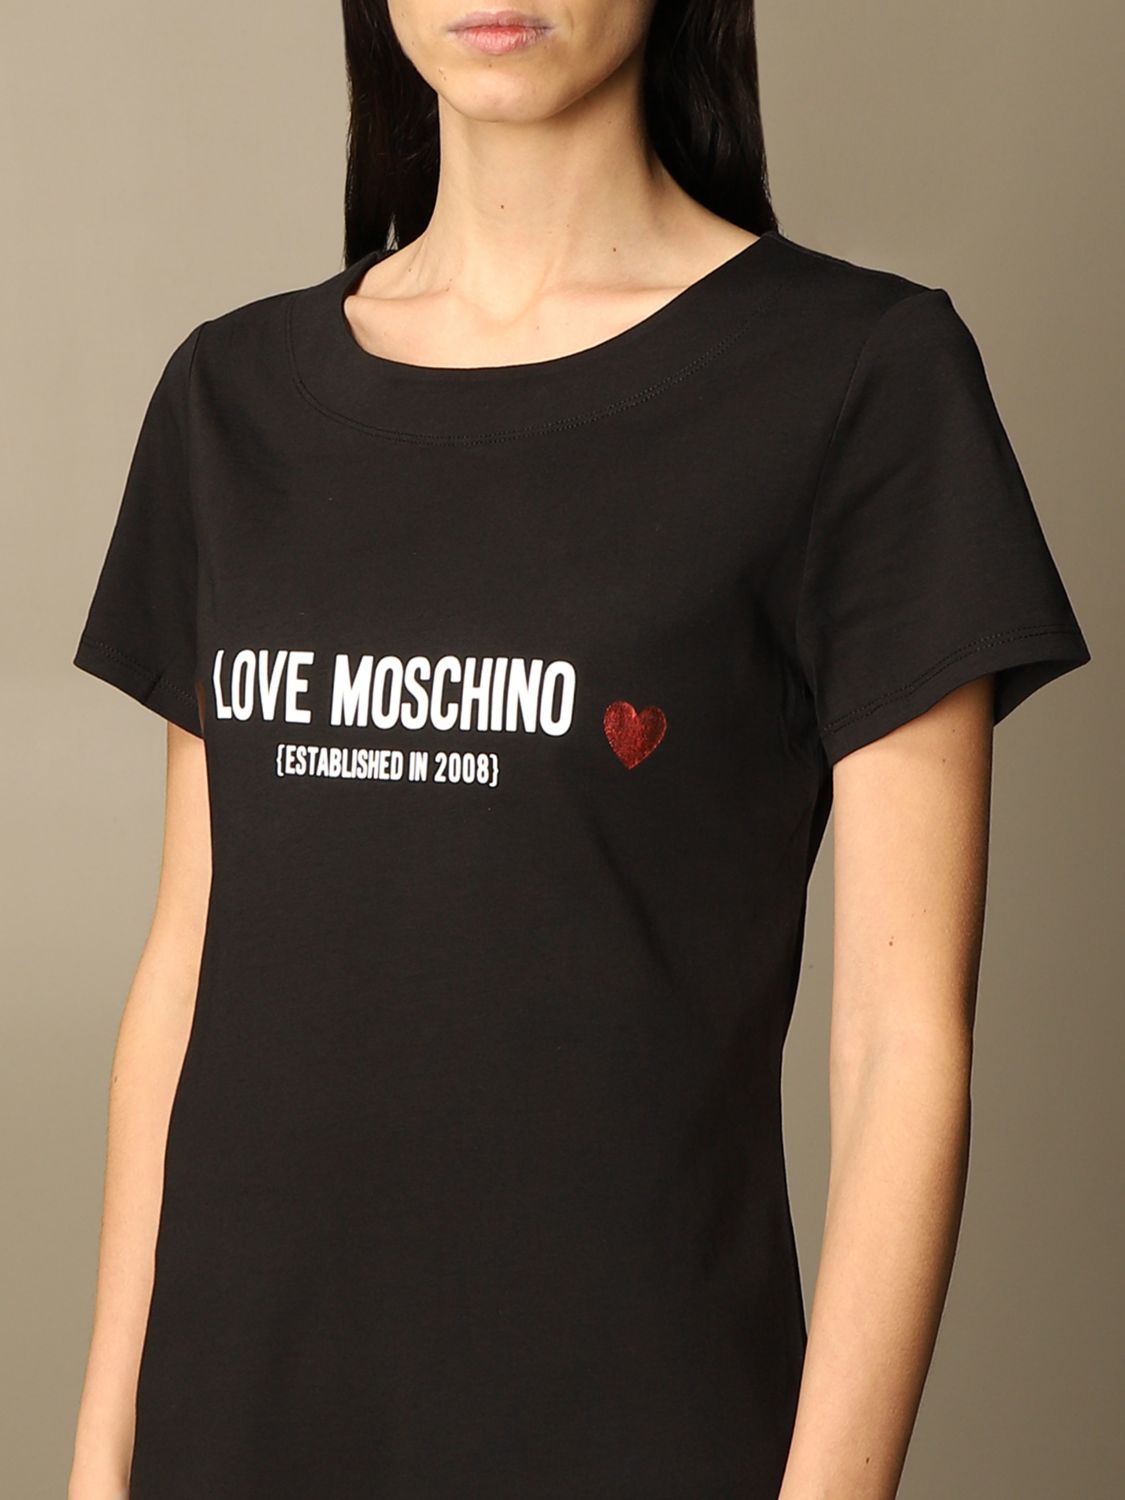 moschino t shirt dress womens